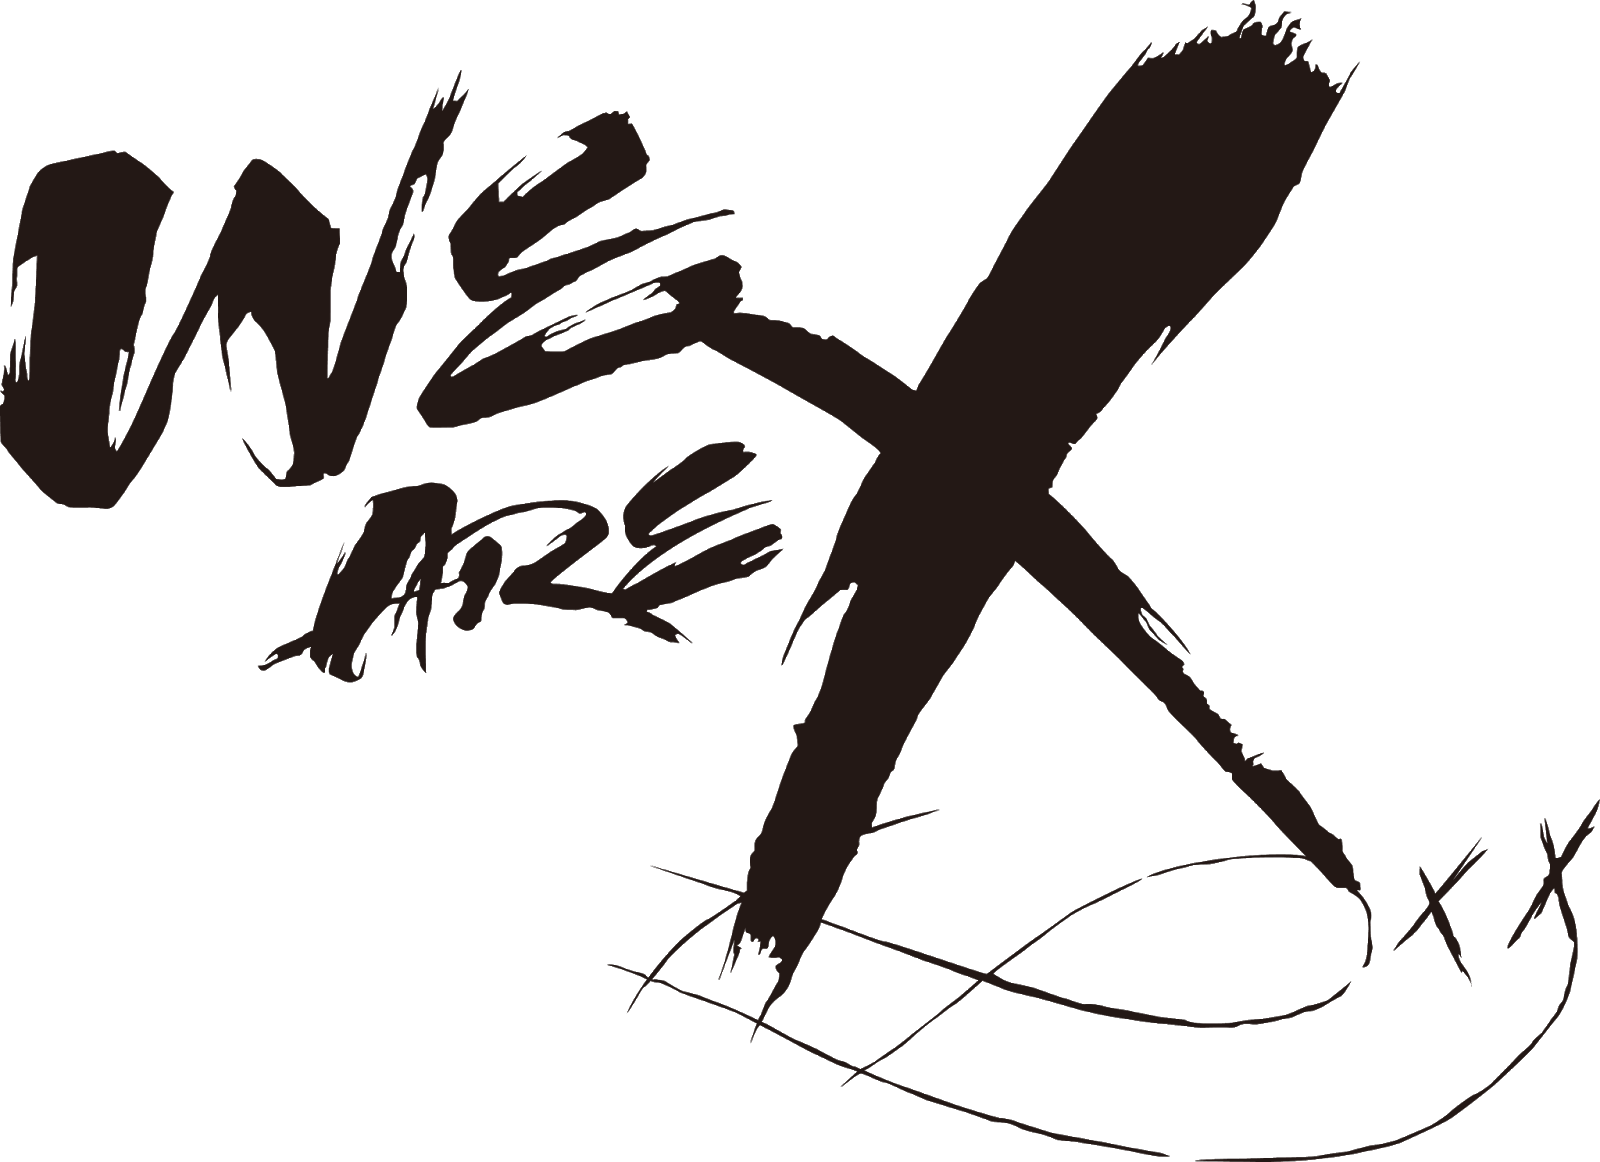 Logodol 全てが高画質 背景透過なアーティストのロゴをお届けするブログ 細部の再現までこだわった We Are X の高画質背景透過ロゴ